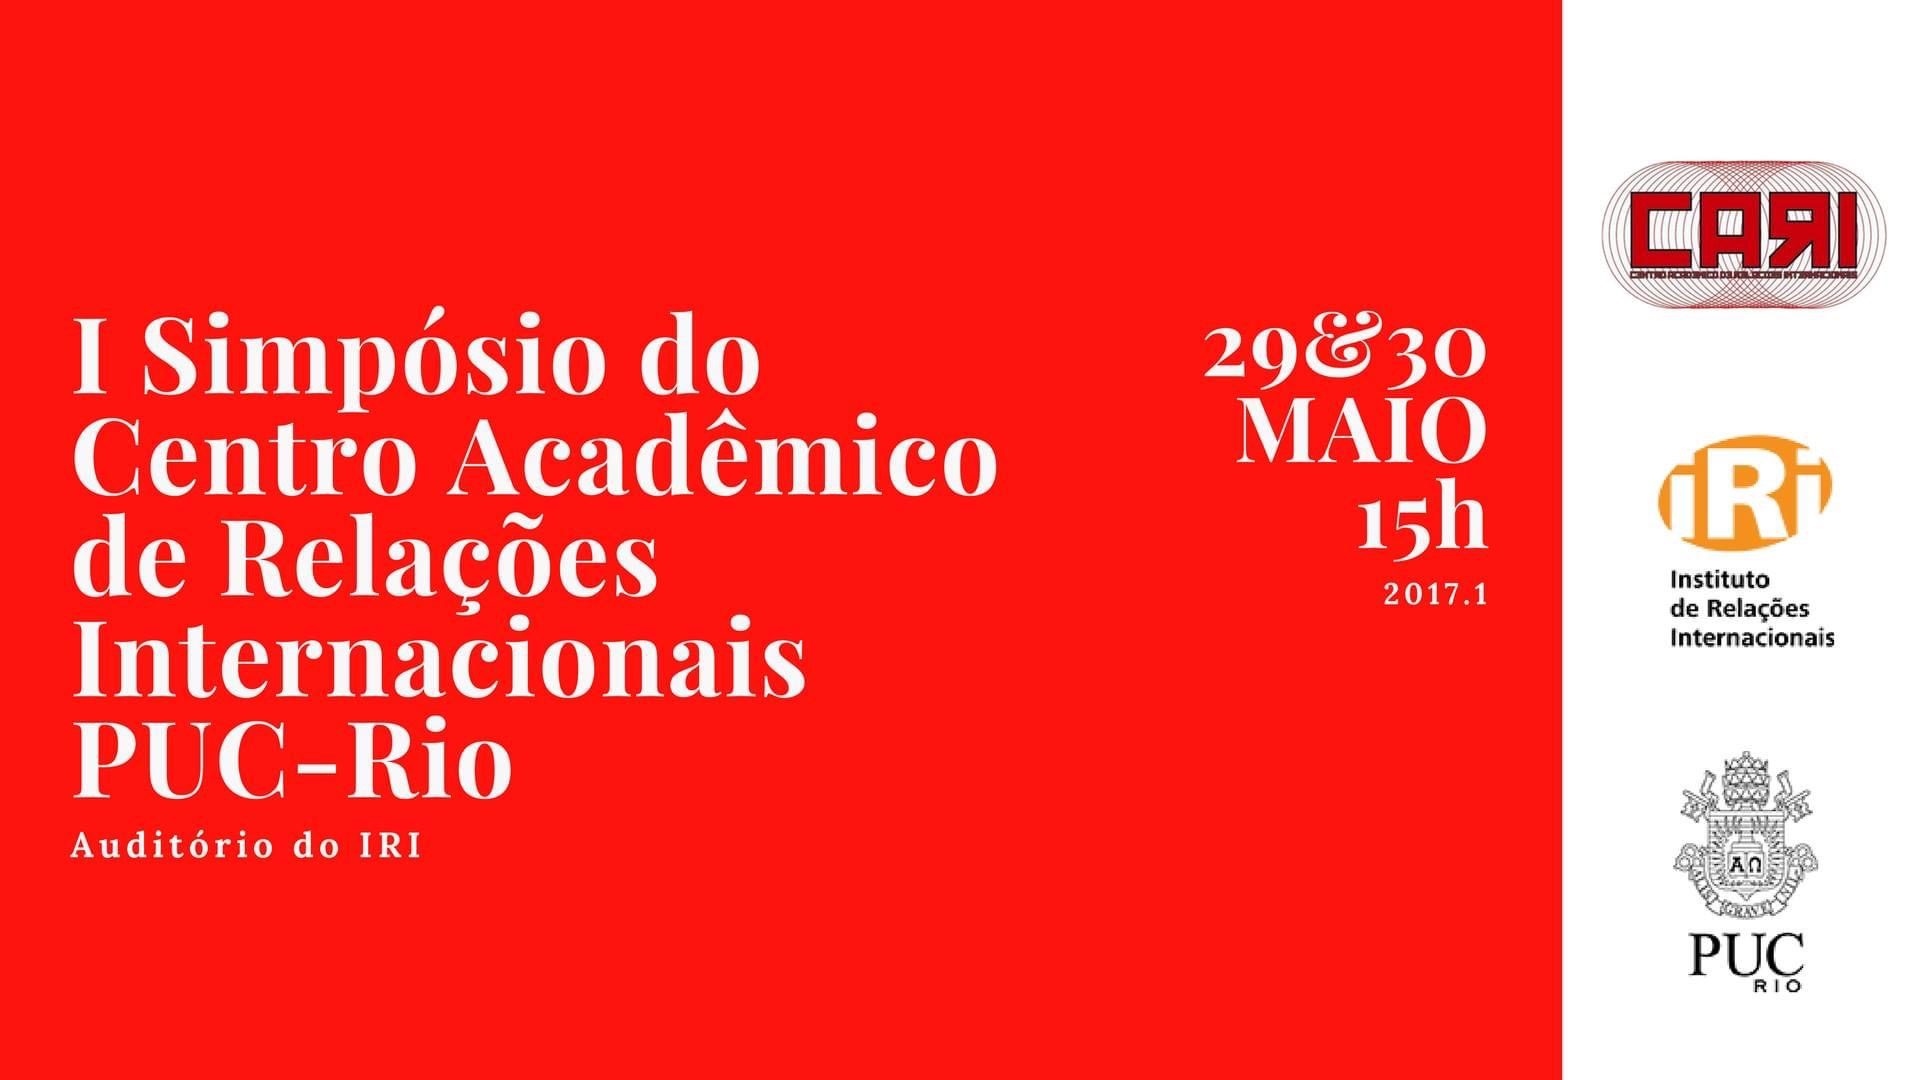 I Simpósio do Centro Acadêmico de Relações Internacionais da PUC-Rio de 2017.1